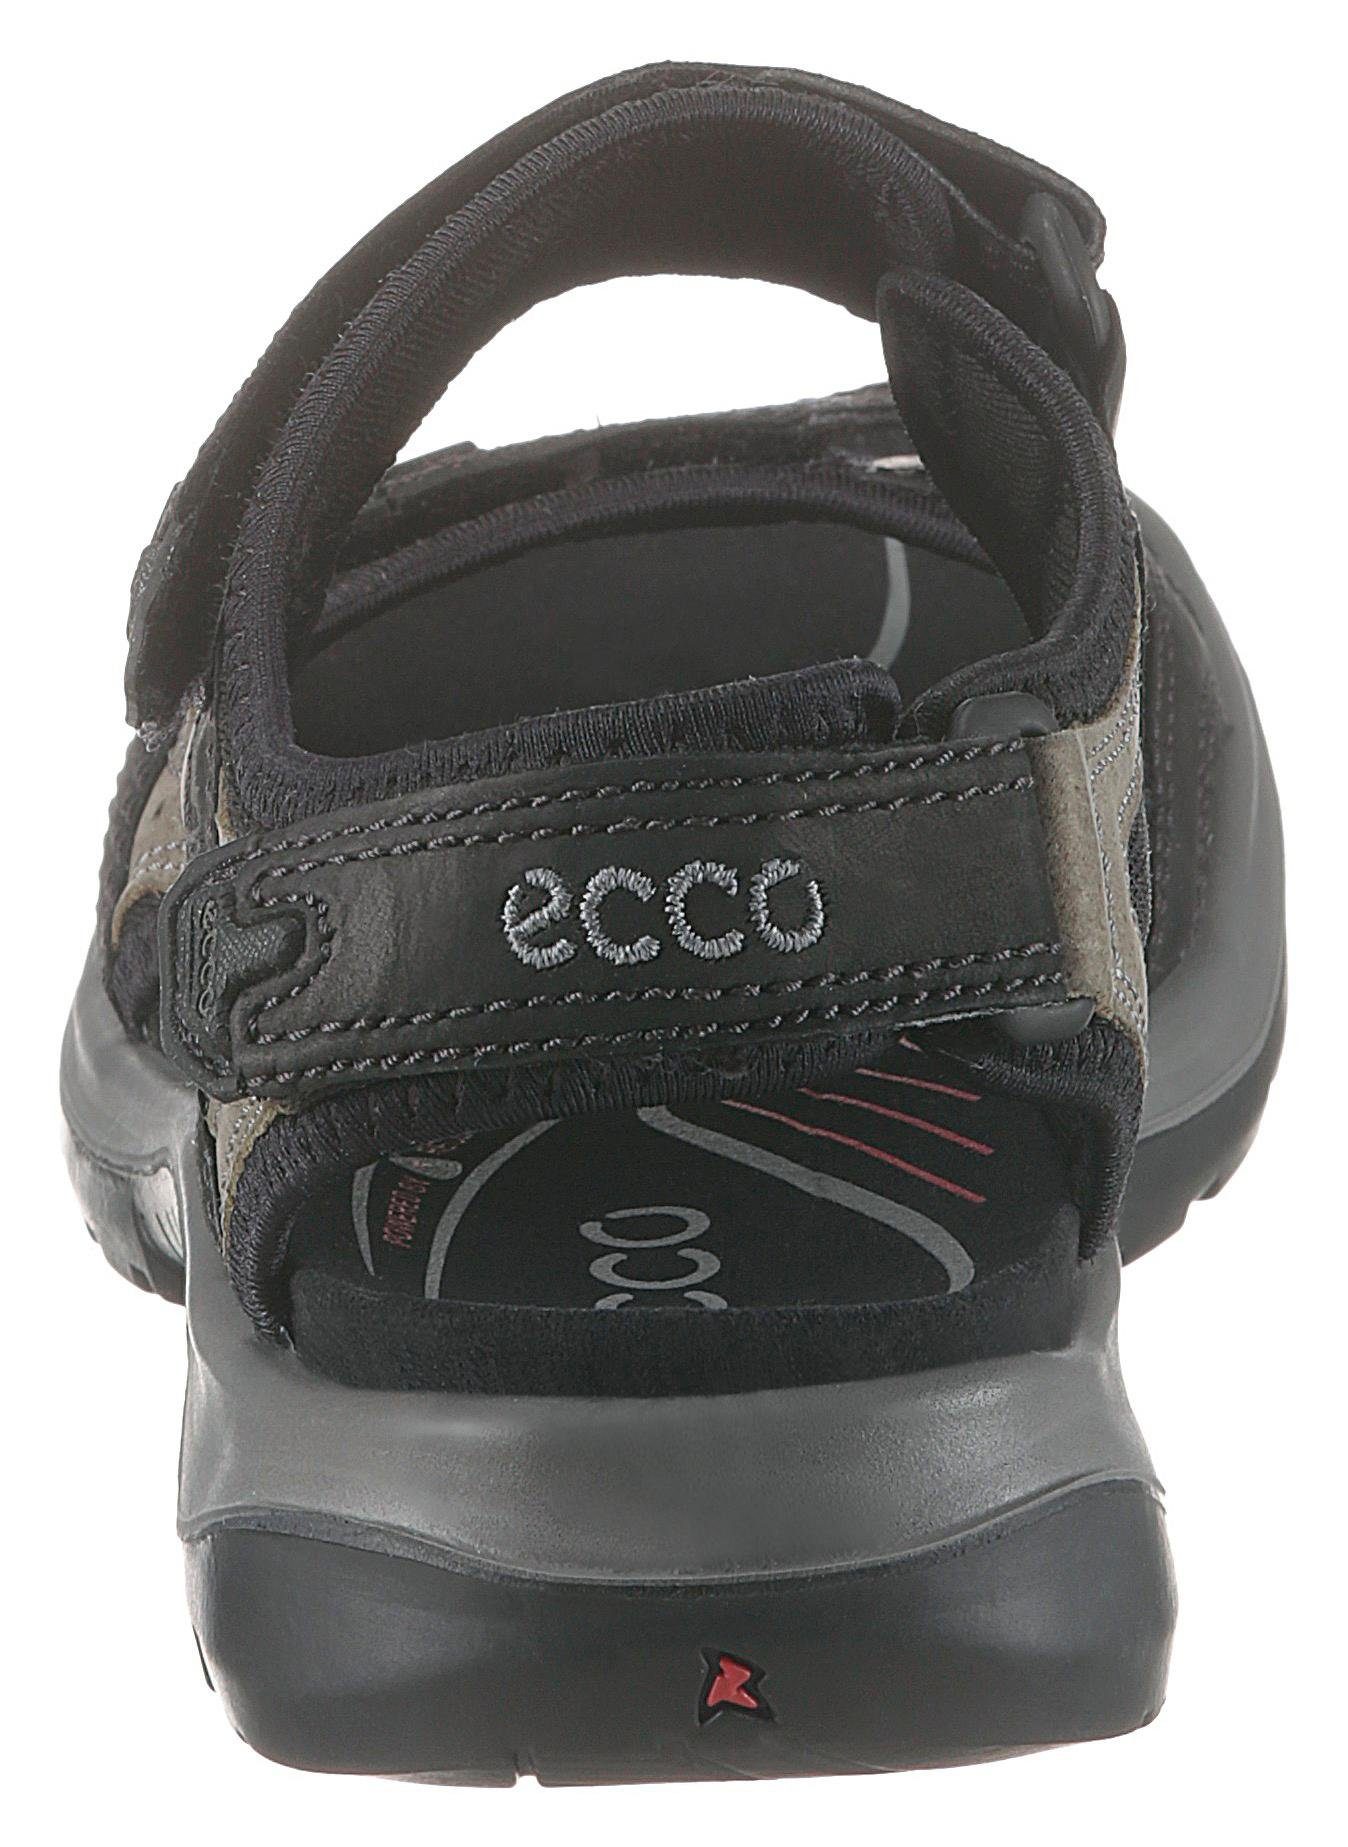 Trekkingsandale in sportlicher Optik Ecco schwarz-grau OFFROAD